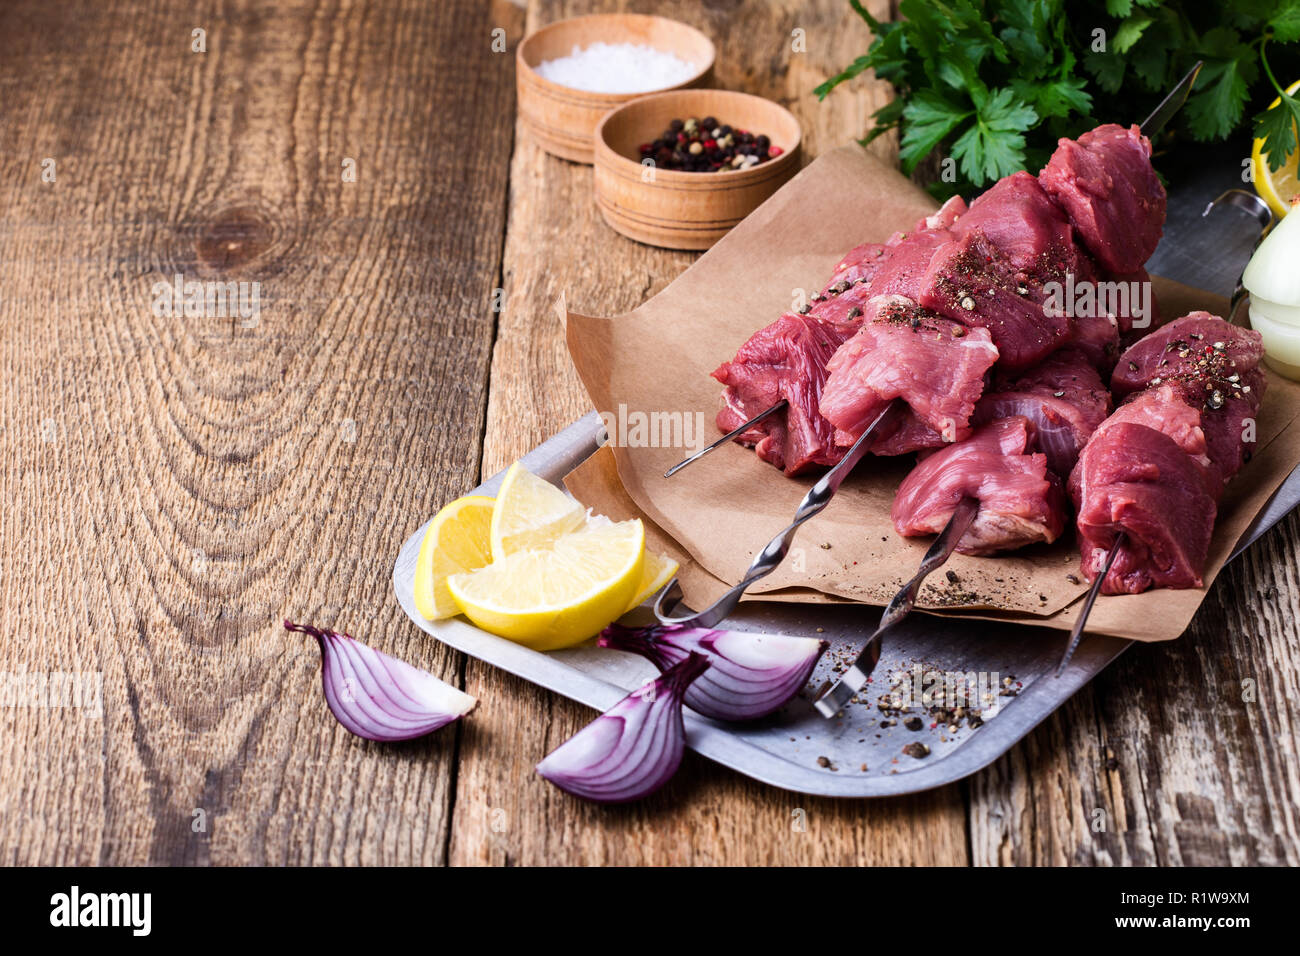 Brochettes de boeuf frais crus,boucherie viande hachée crue et ingrédients culinaires sur table en bois Banque D'Images